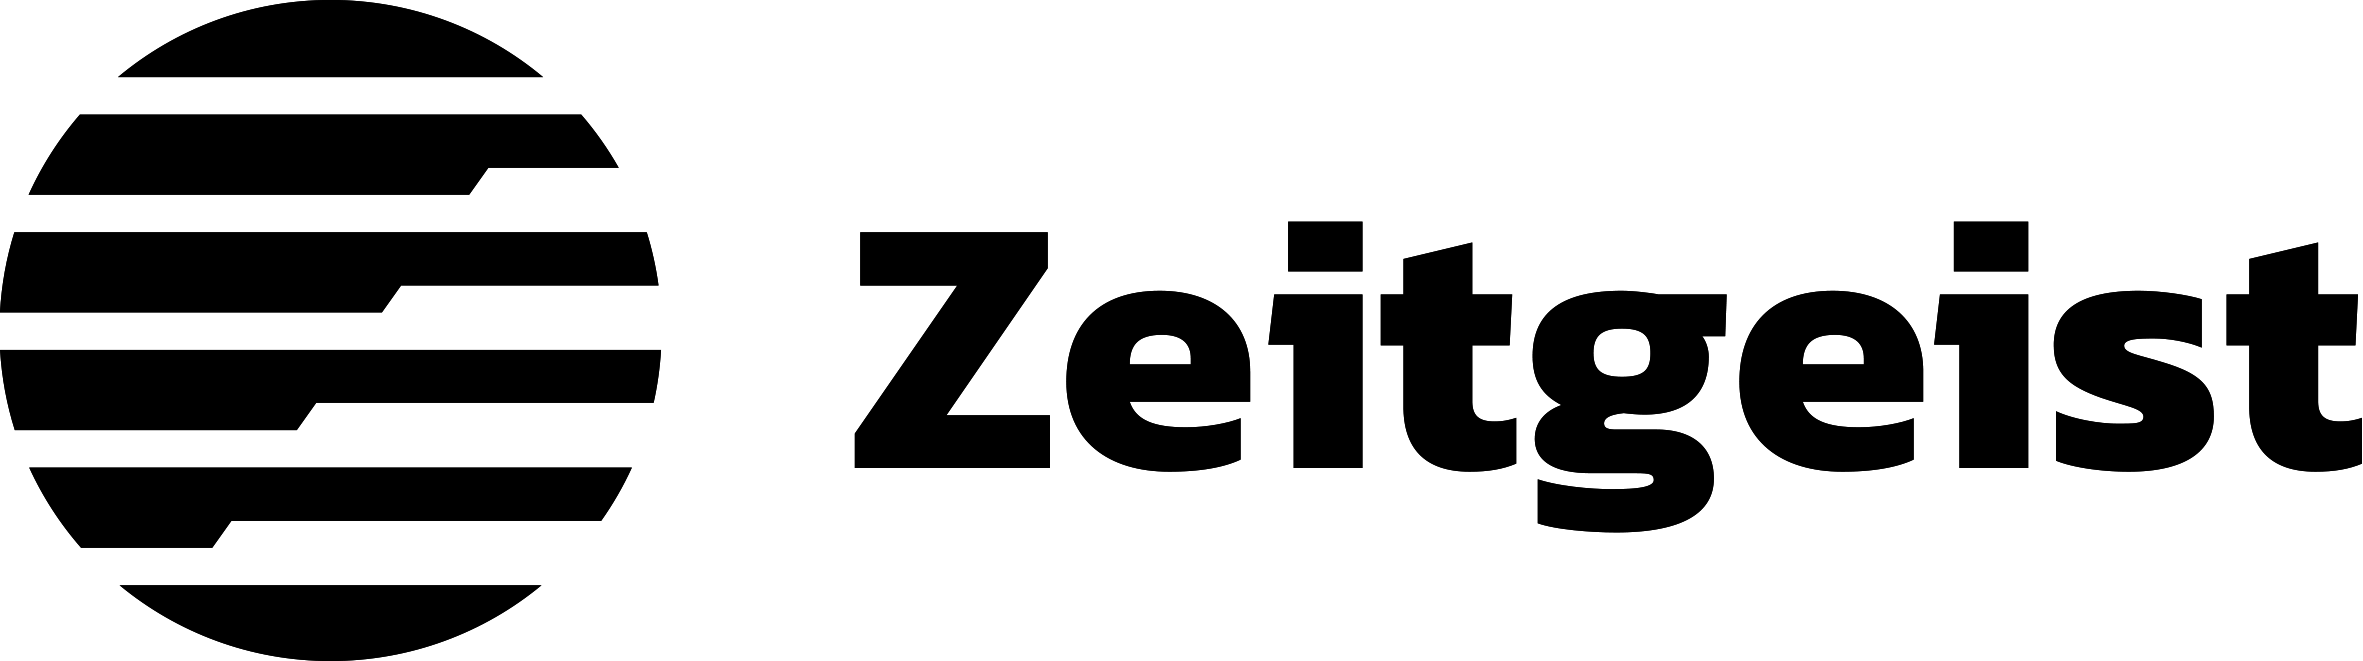 Zeitgeist Logo